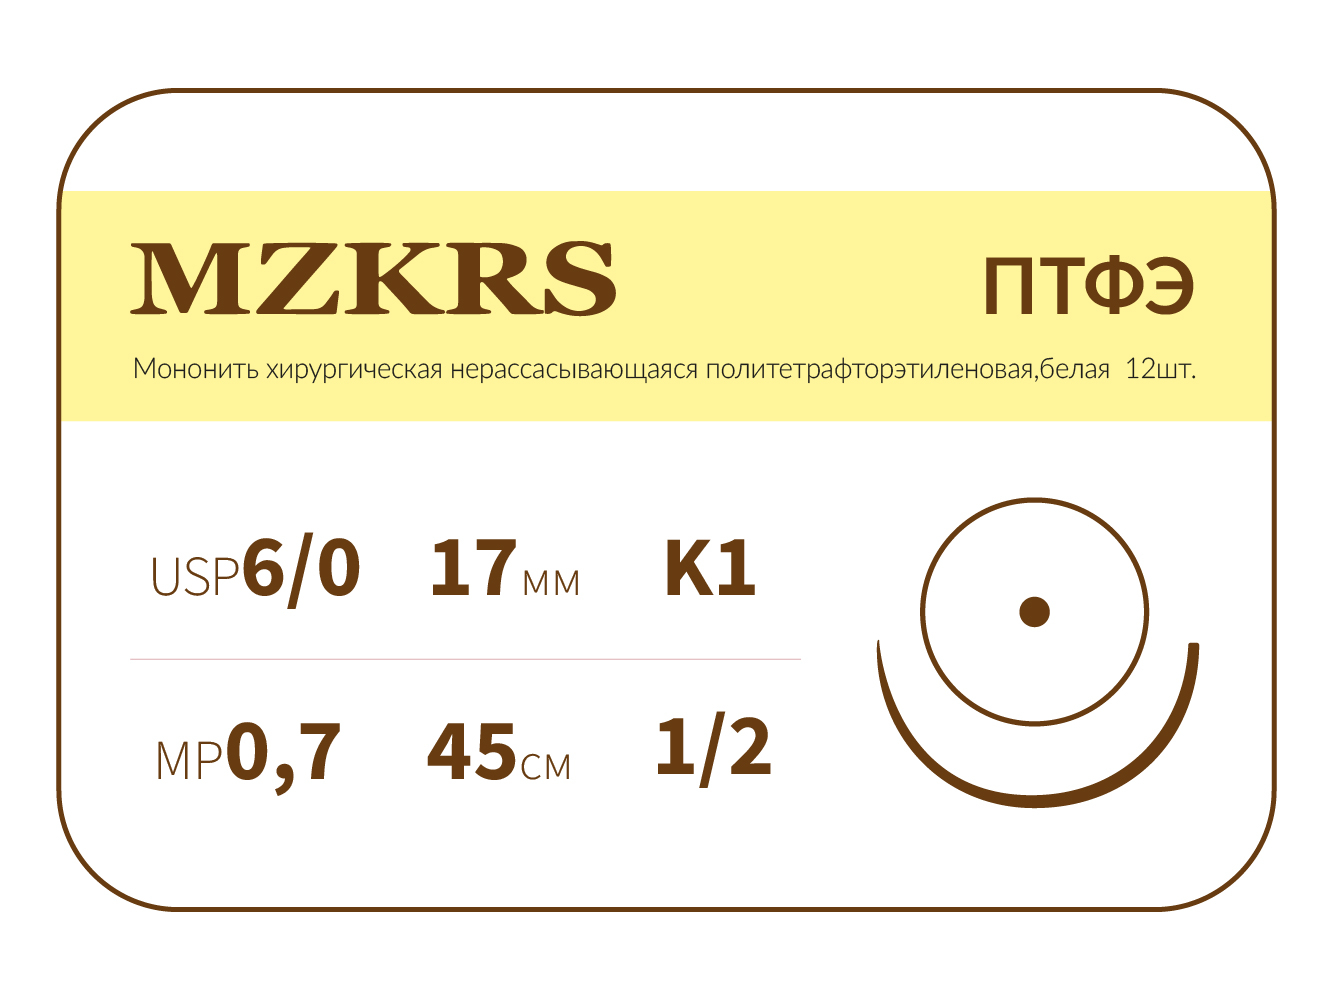 1712К-Premium 6/0 (0.7) 45 ПТФЭ хирургическая нить политетрафторэтиленовая, MZKRS (Россия)